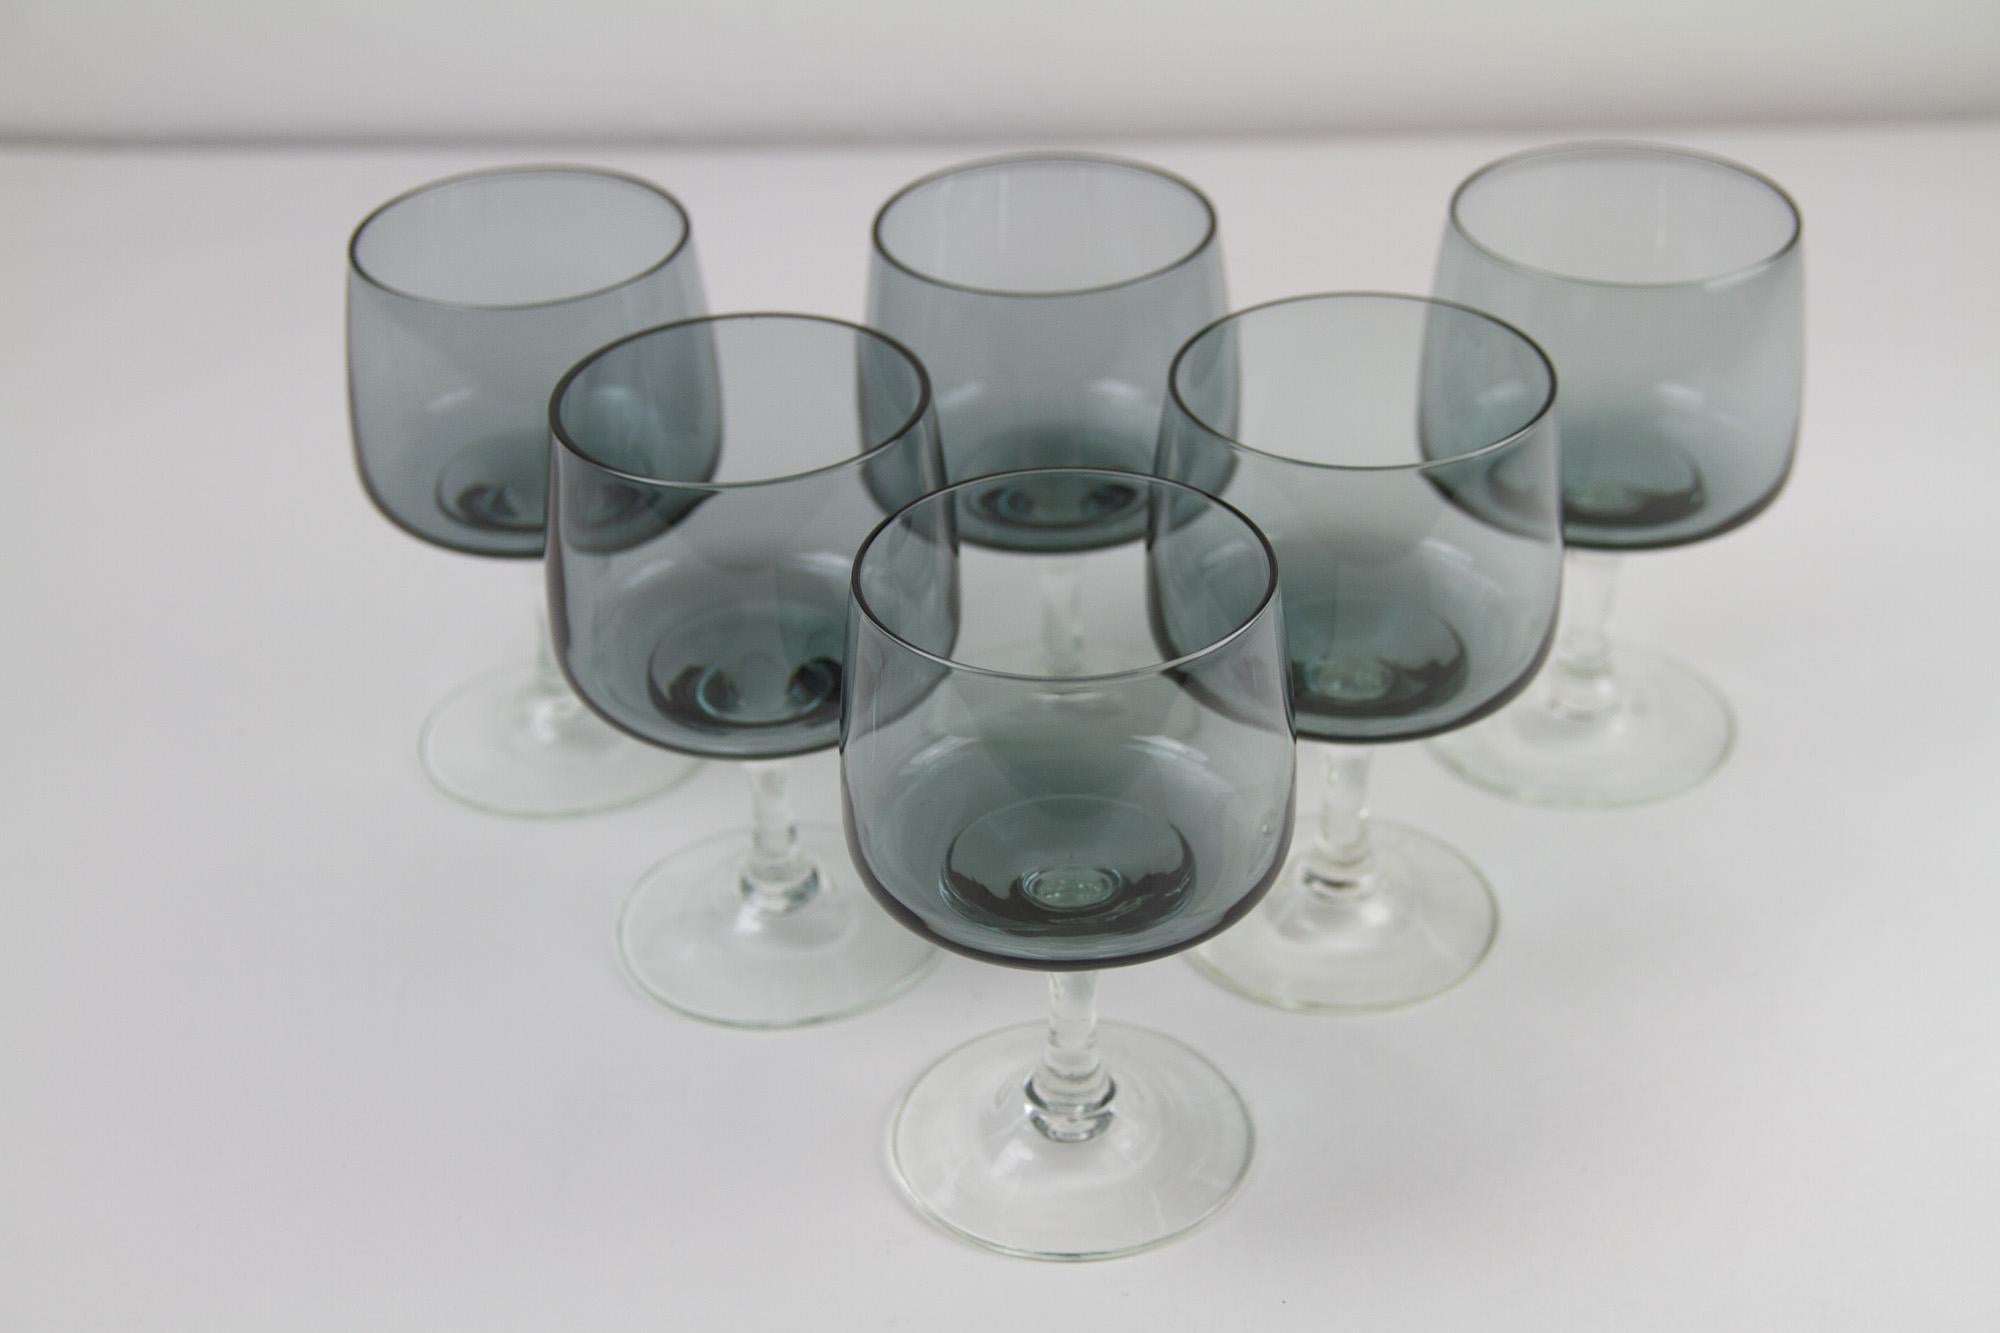 Verres à vin rouge danois vintage Holmegaard Atlantic, années 1960. Ensemble de 6.
Ensemble de 6 magnifiques verres à boire vintage soufflés à la main de la verrerie danoise Holmegaard, conçus par Per Lütken en 1962. Ils n'ont été fabriqués qu'entre